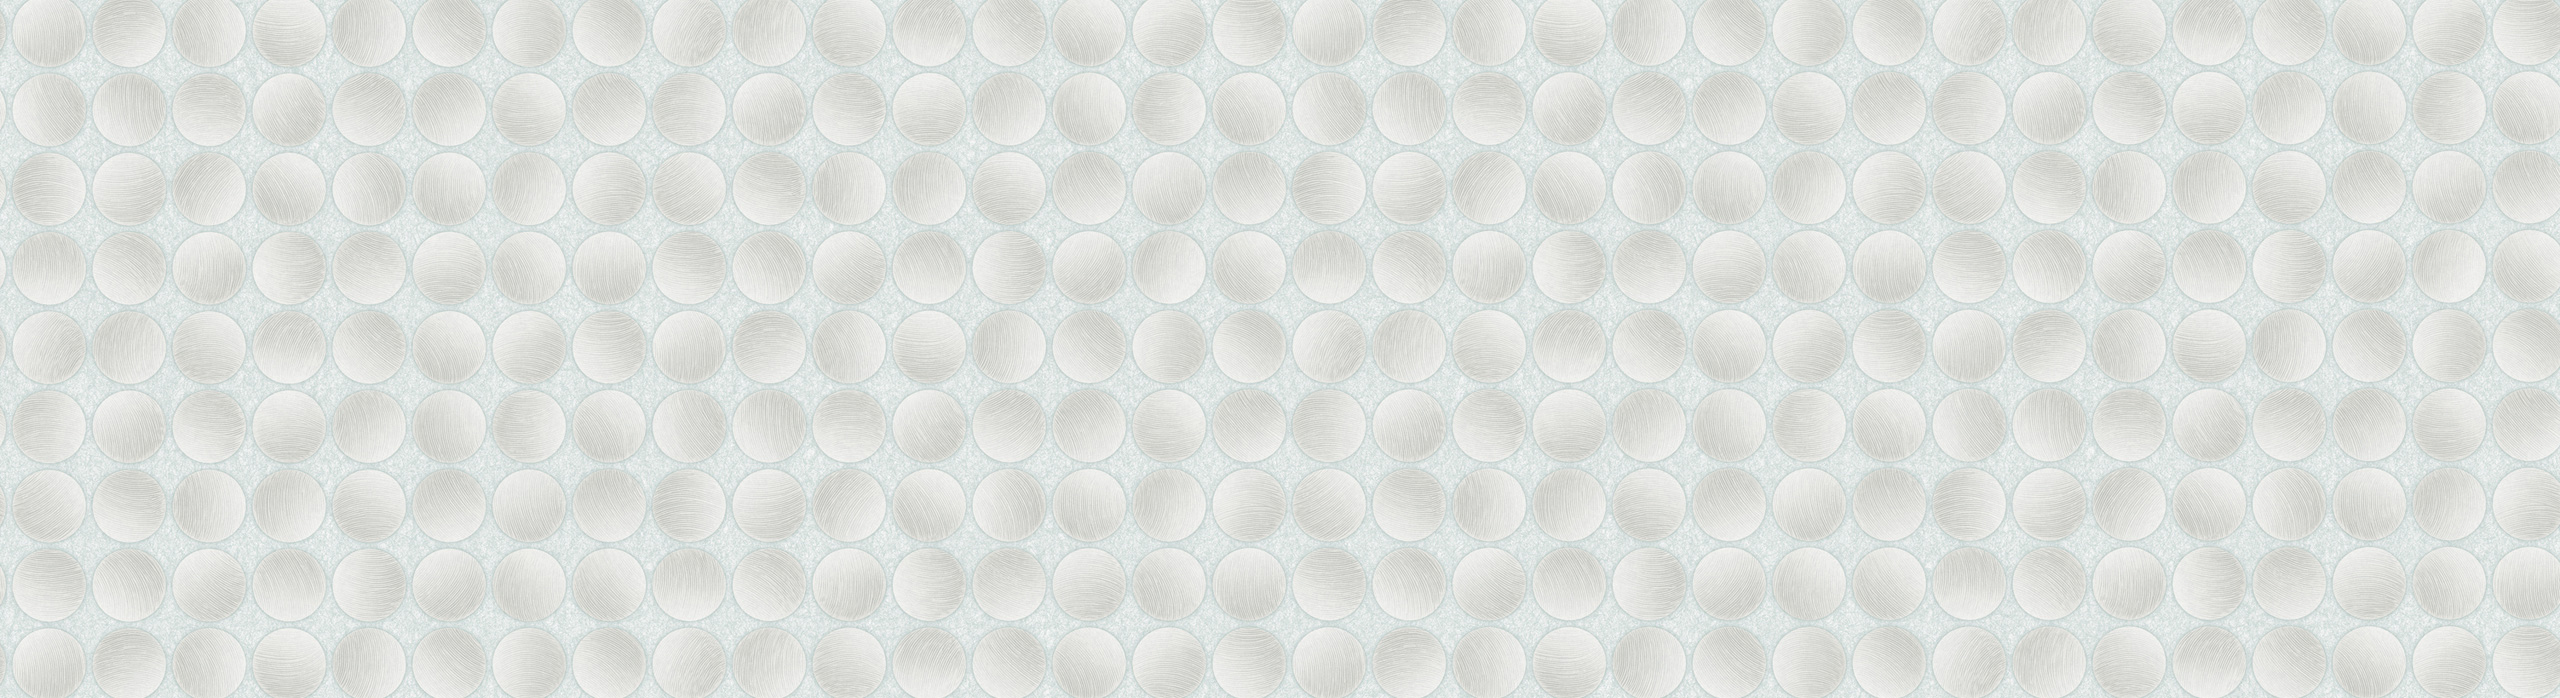 картинка 88305-4 PHOENIX 2018 Обои виниловые на бумажной основе 1.06*15.6 рисунок 3d цвет голубой